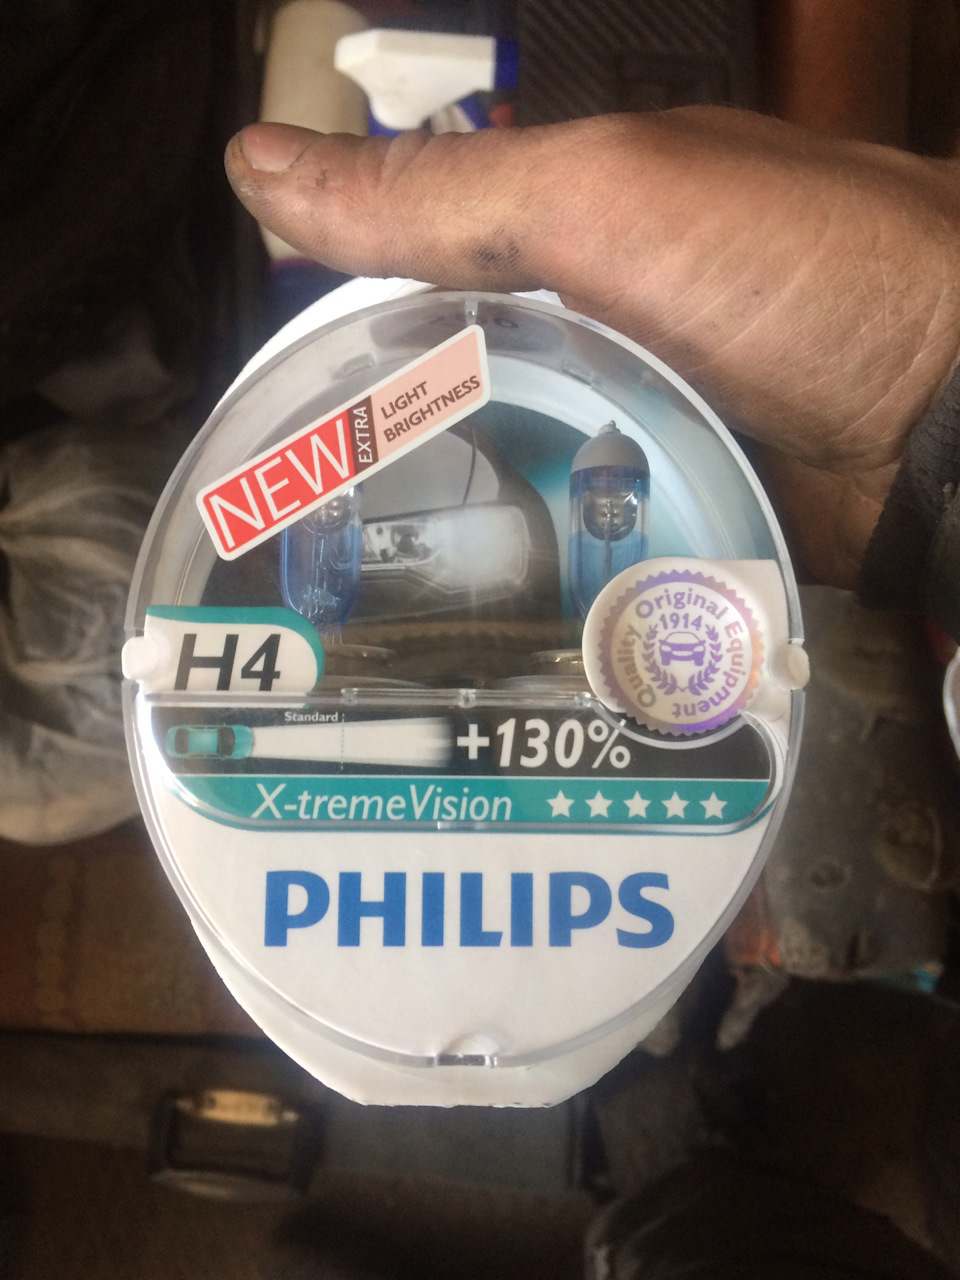 Филипс 130. Philips +130%. Philips +130 маркировка. Смотретькаксветятлампочкиh4 Филипс 130 на акценте.